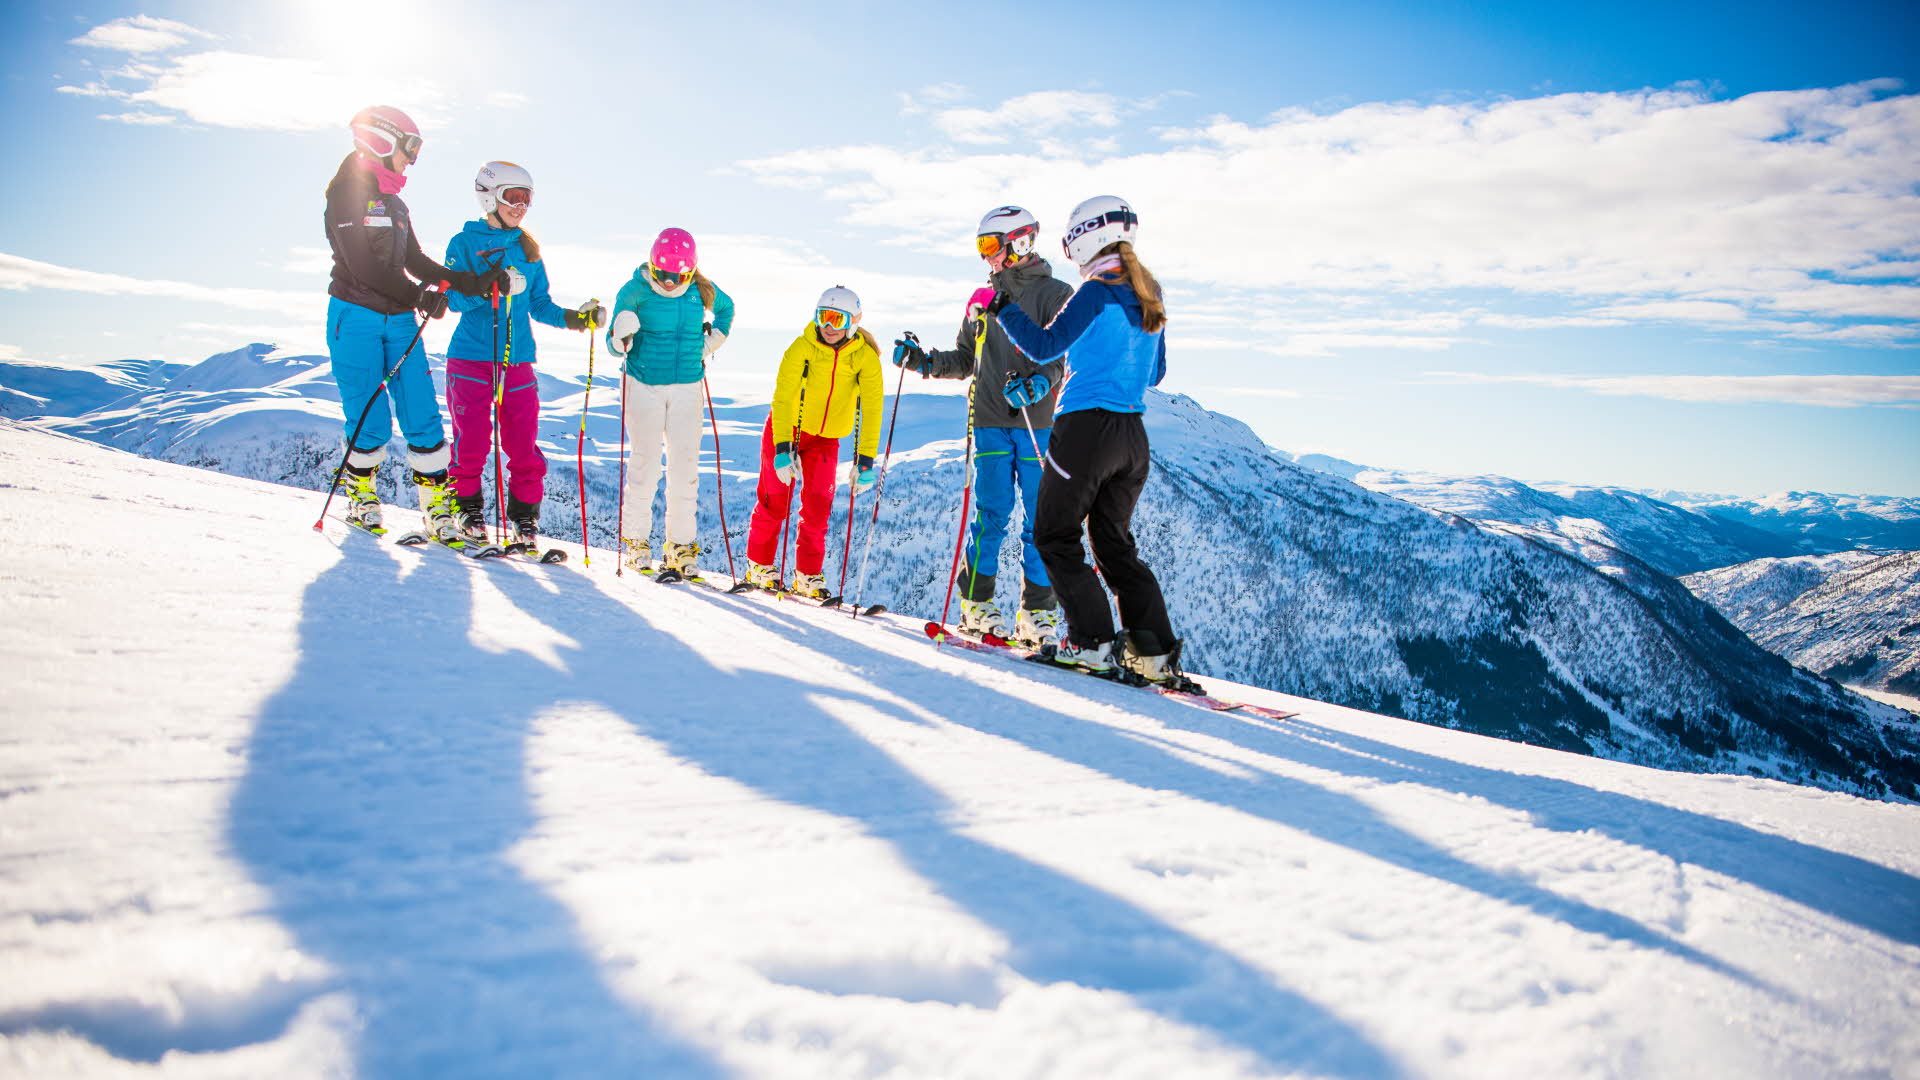 晴れた日に冬の風景を見下ろすミルダルスキーリゾートのスキー場でアルペンダウンヒルギアを付けて立っている6人のスキーヤー